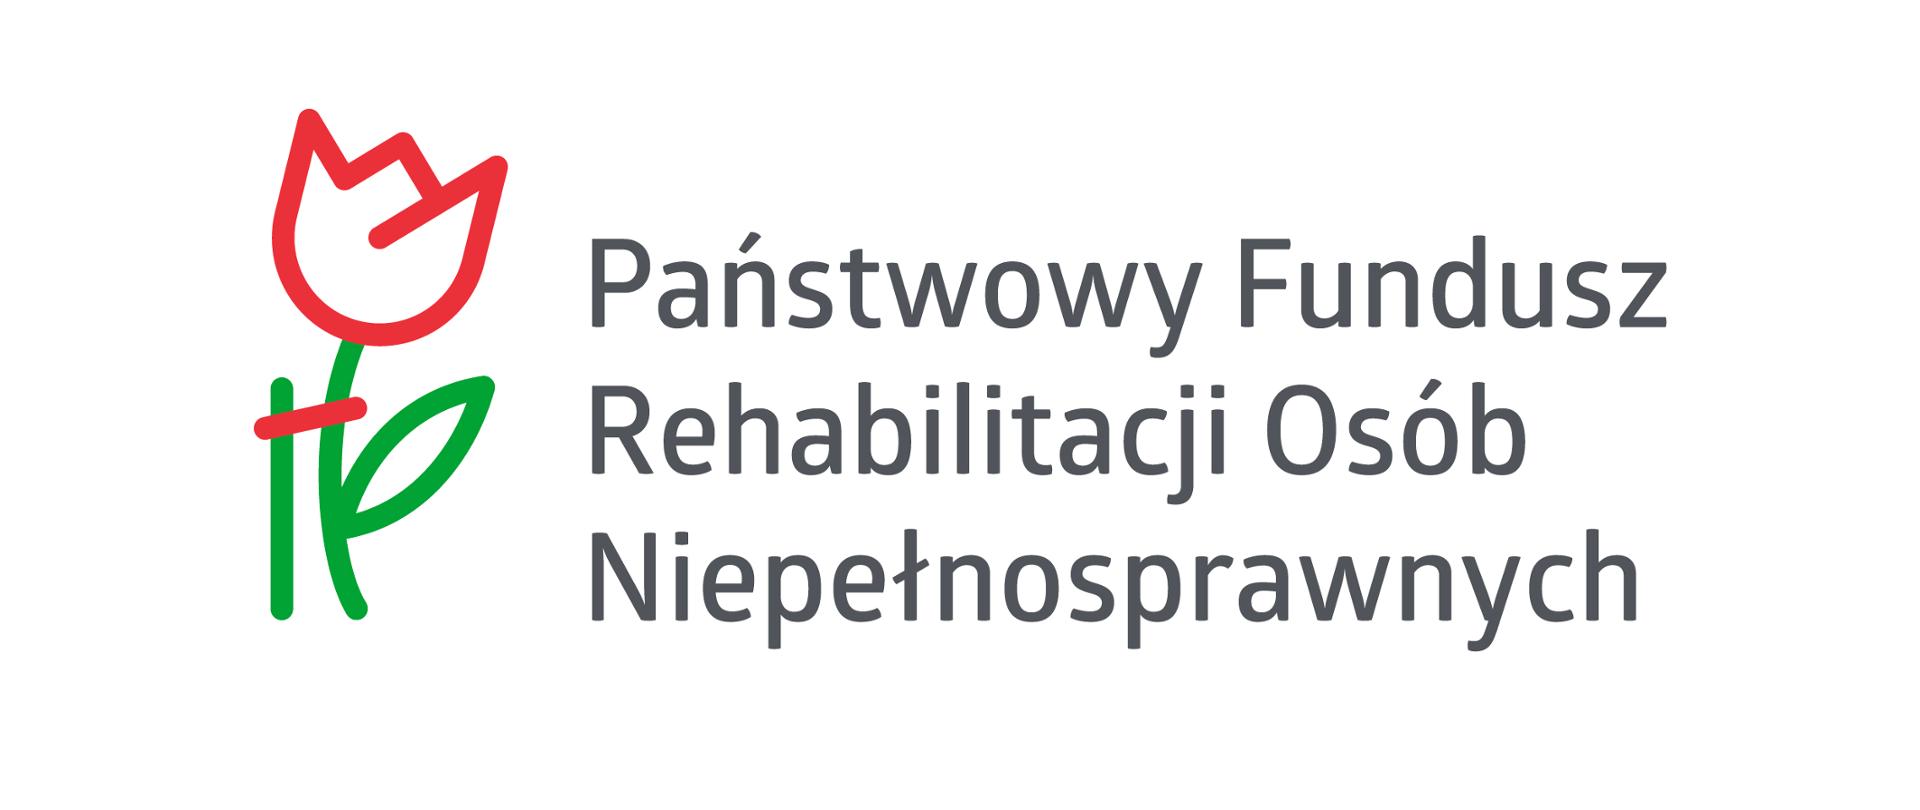 Rysunek kwiatka, obok tekst: "Państwowy Fundusz Rehabilitacji Osób Niepełnosprawnych"